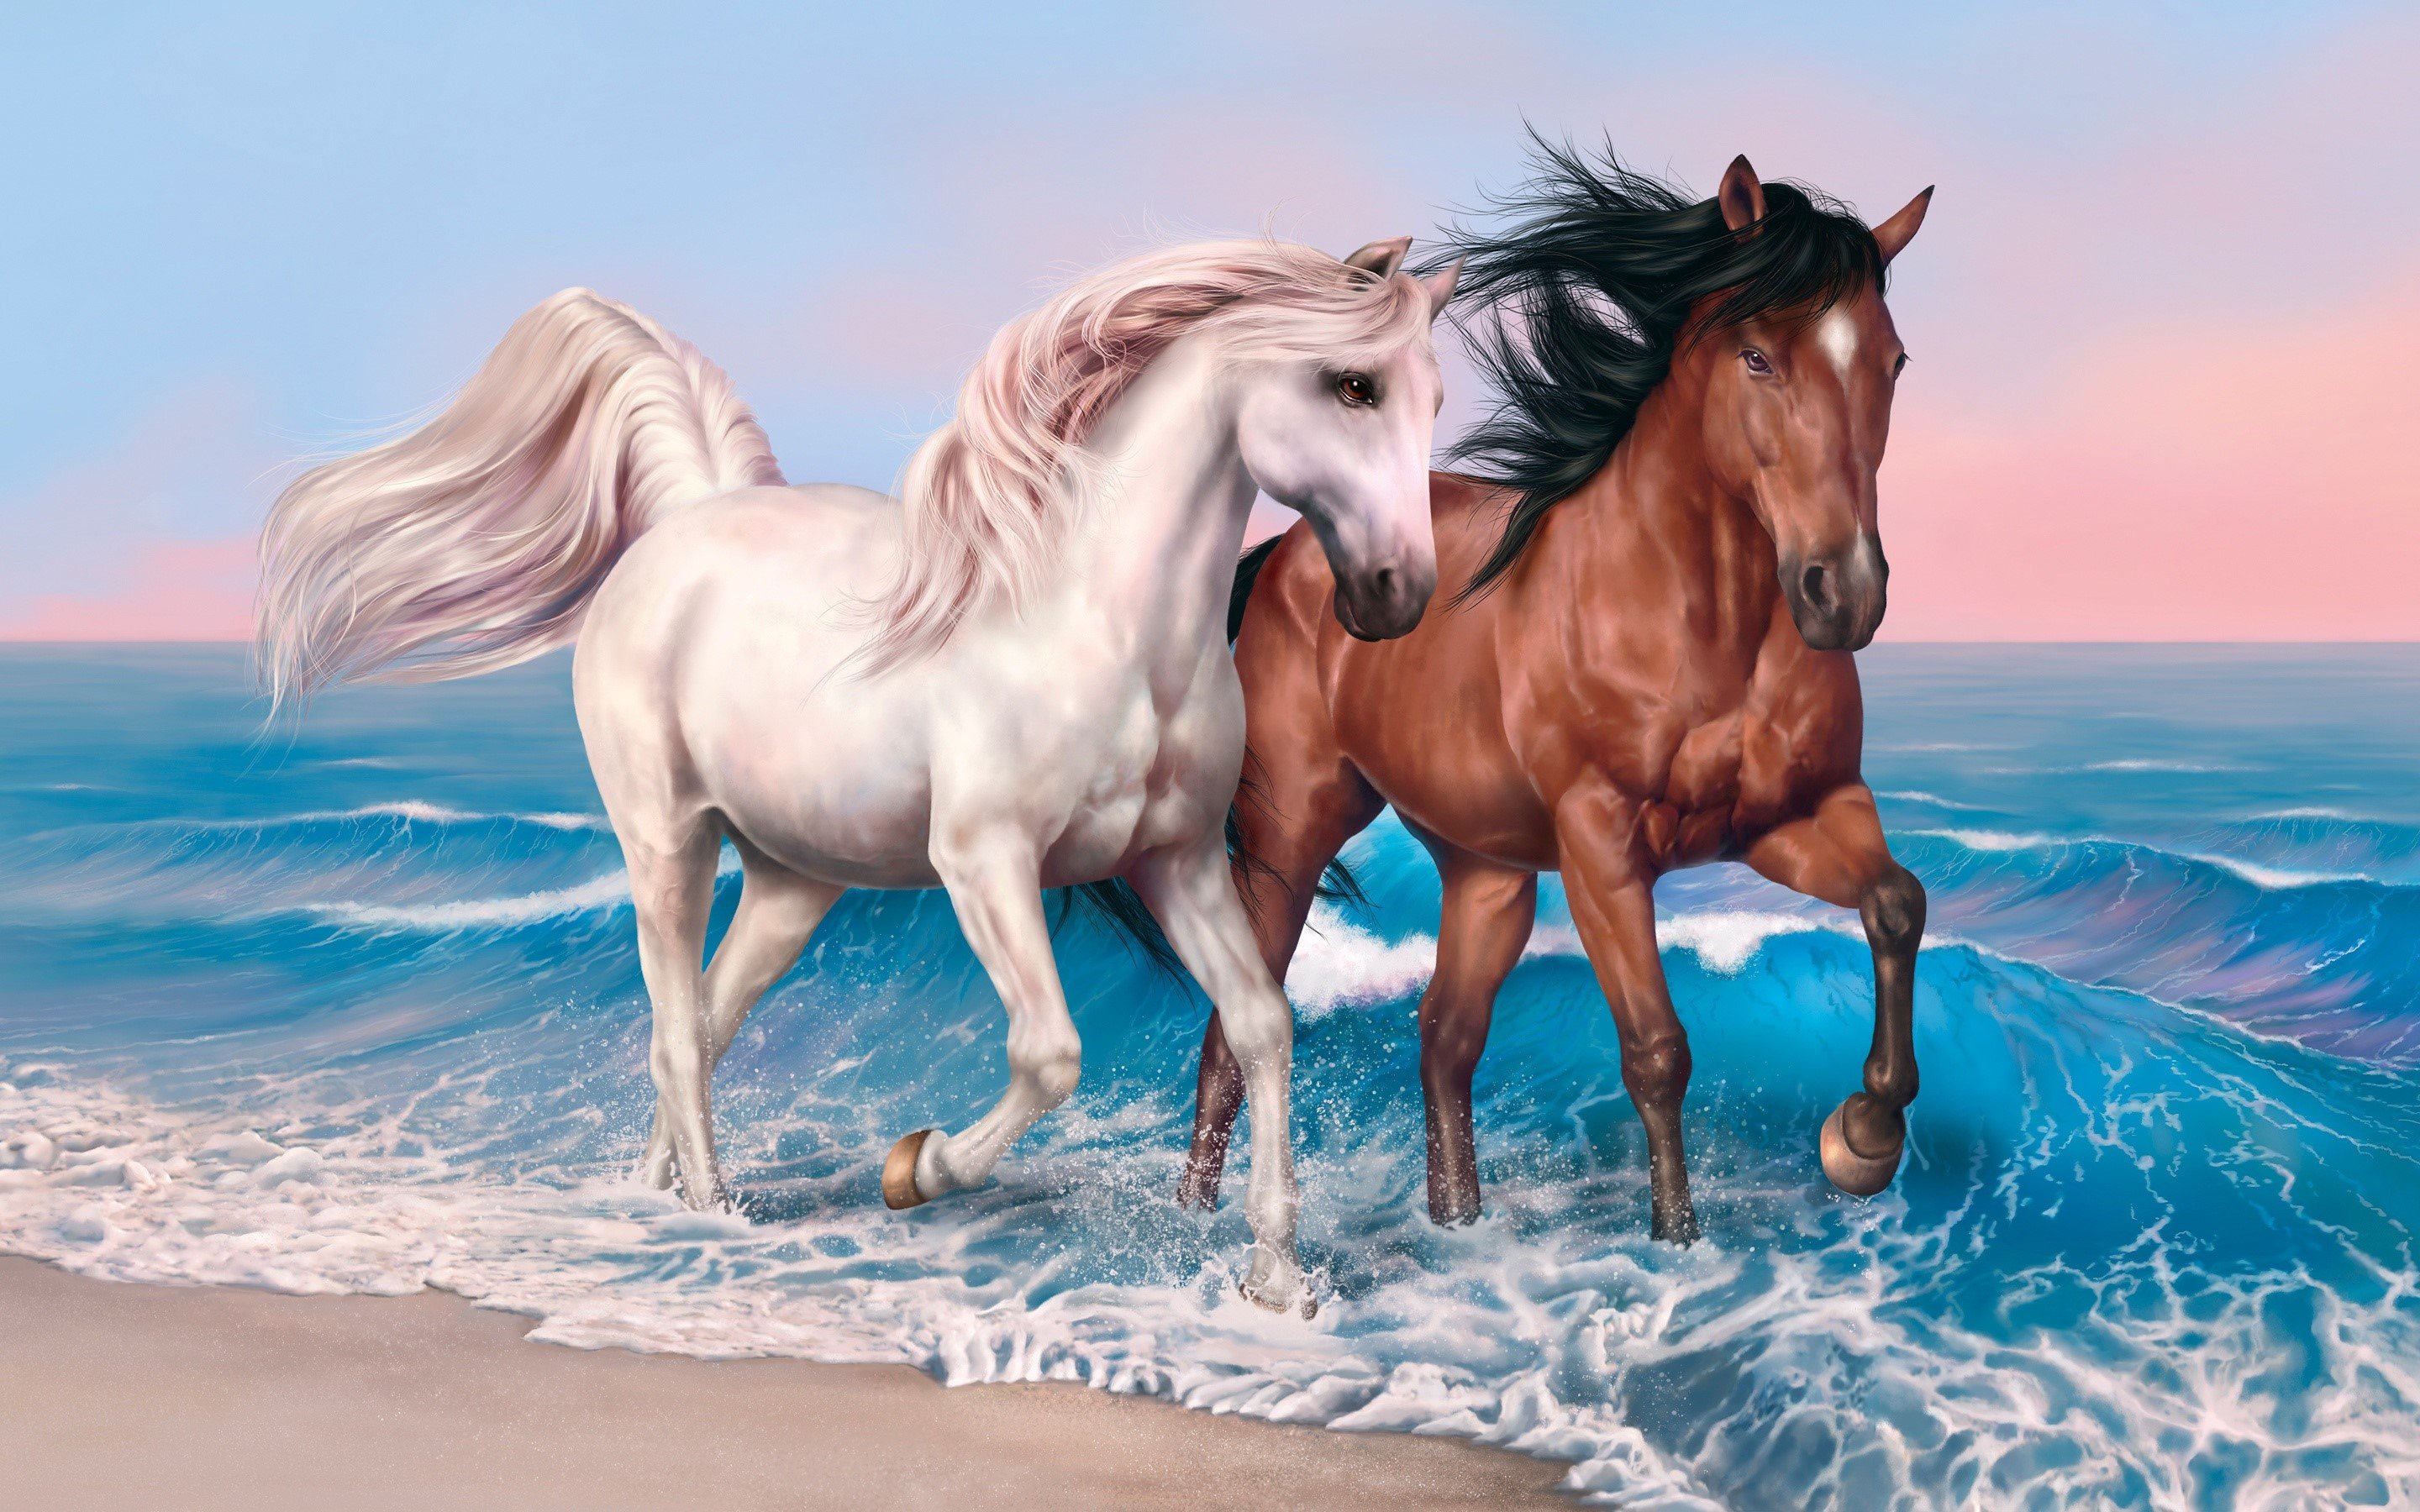 Fondos de pantalla Pintura de caballos